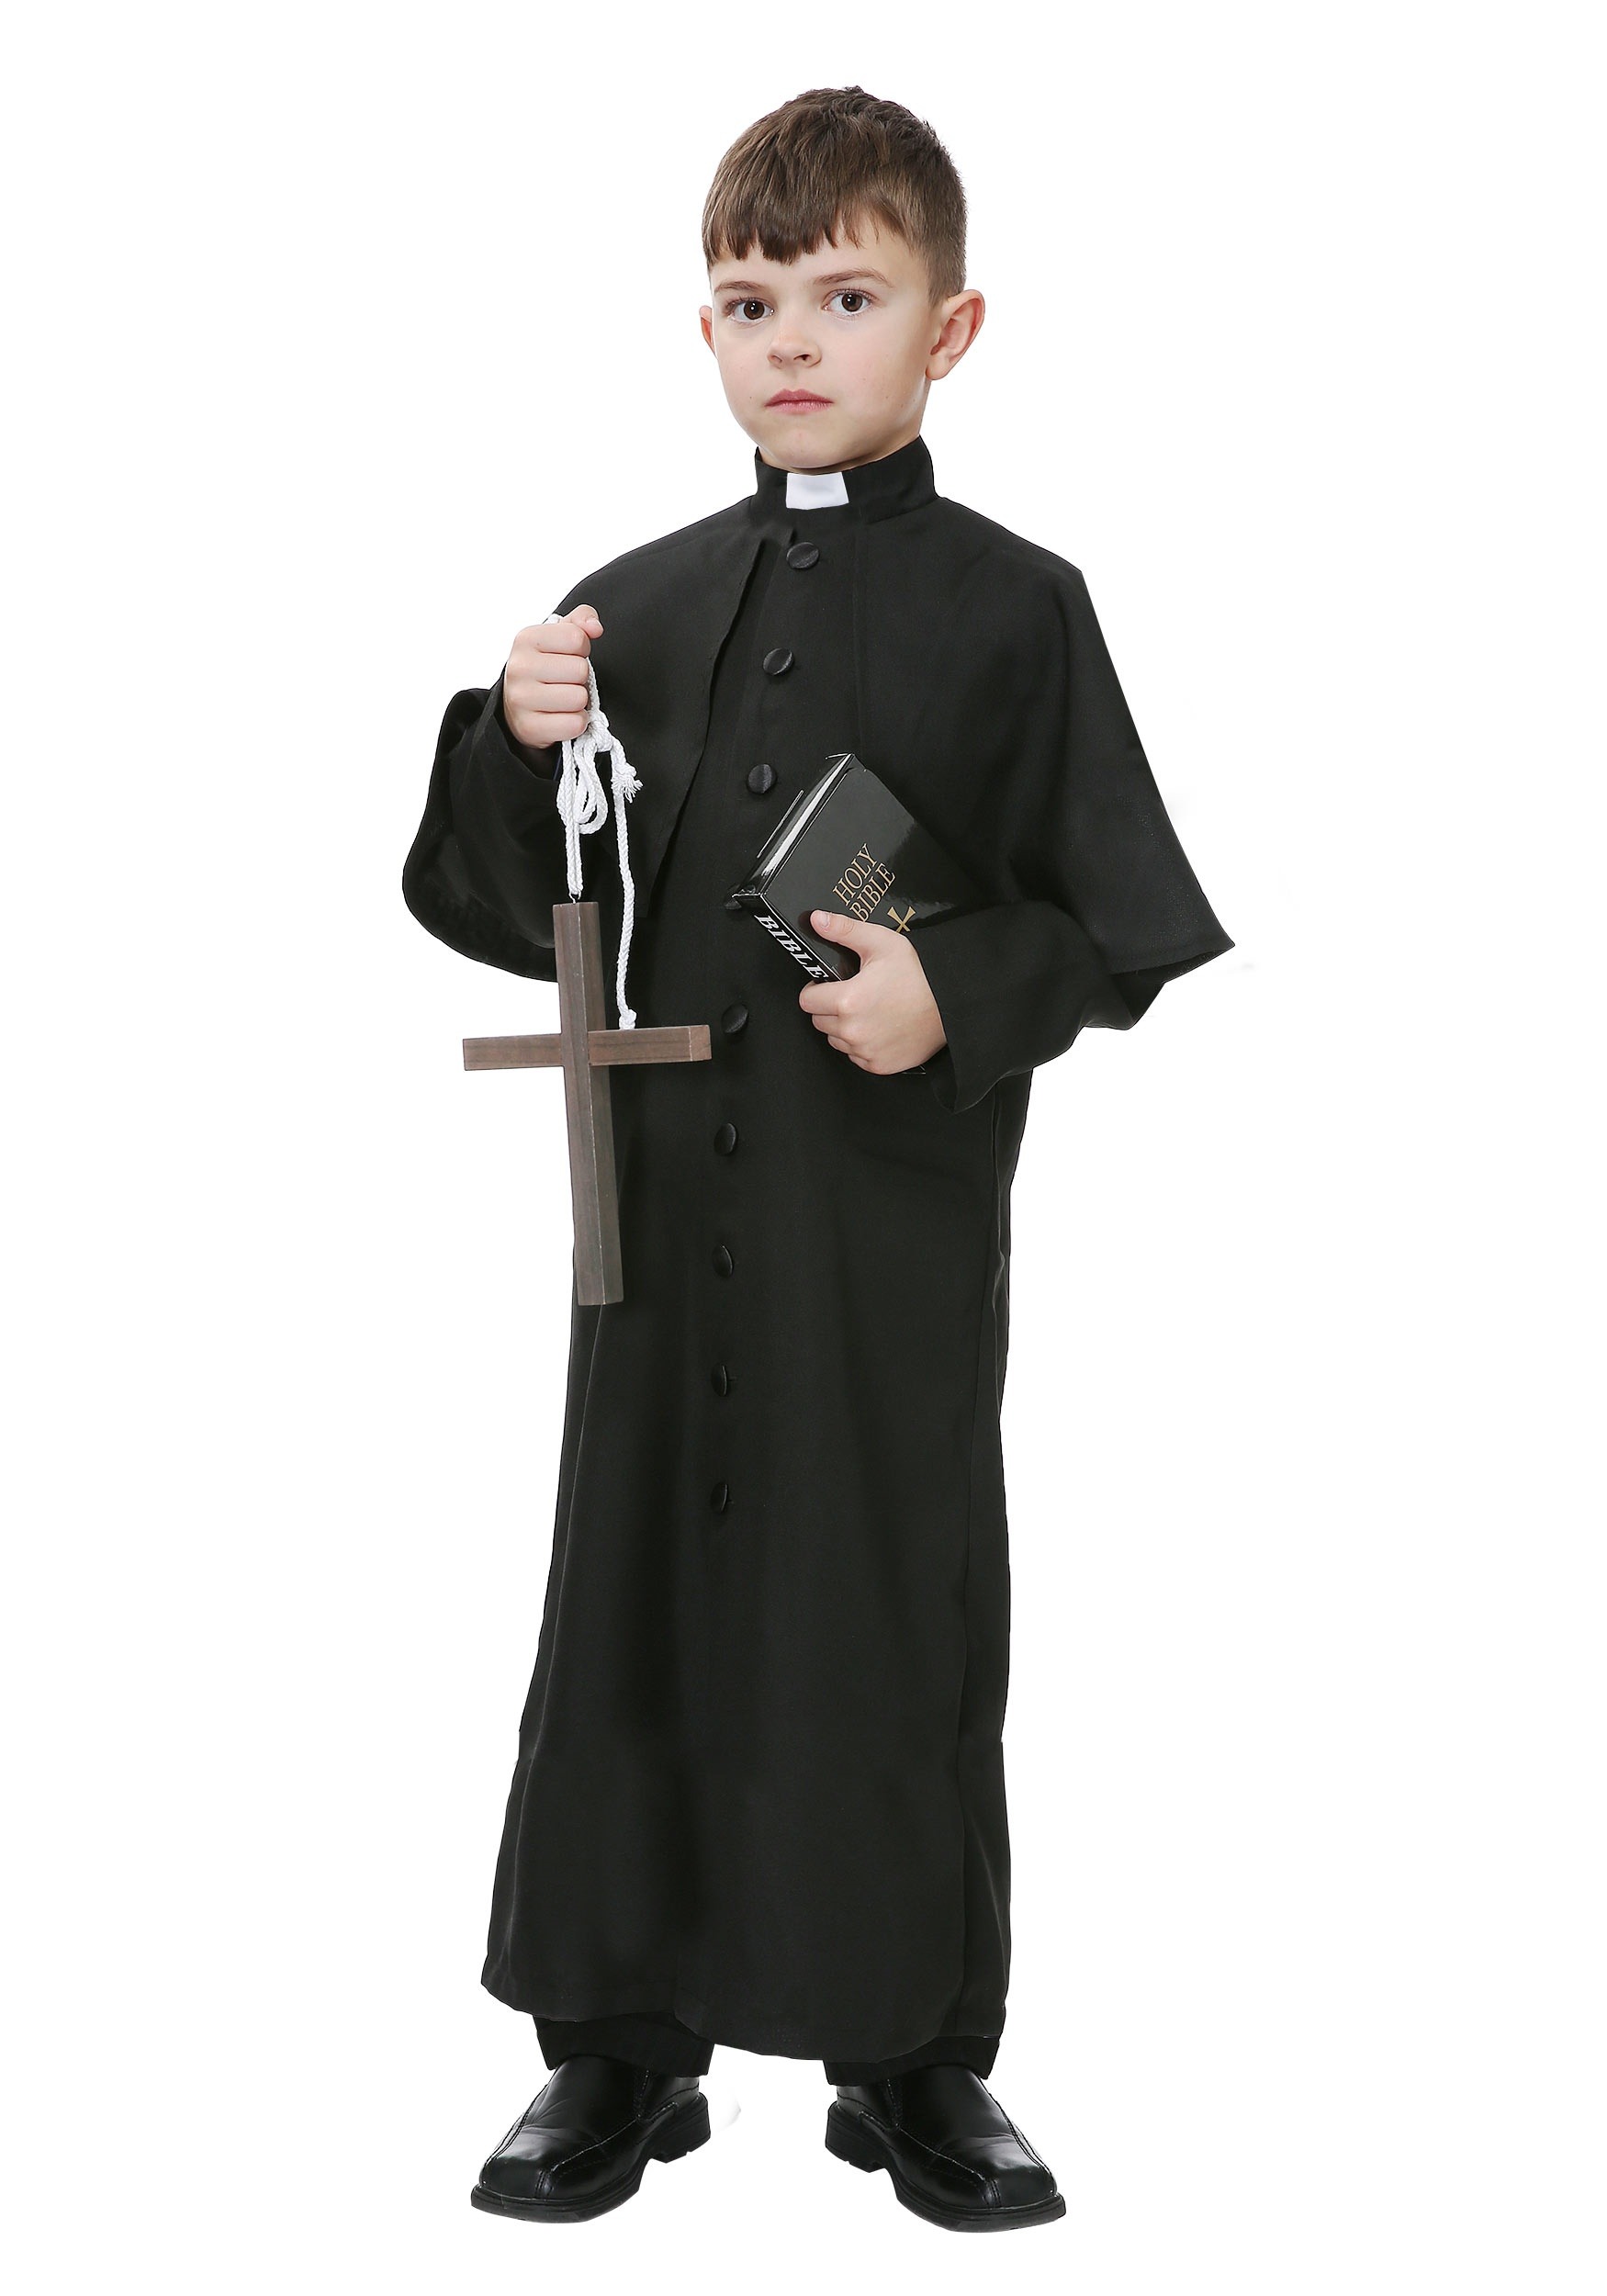 Deluxe Priest Kids Costume